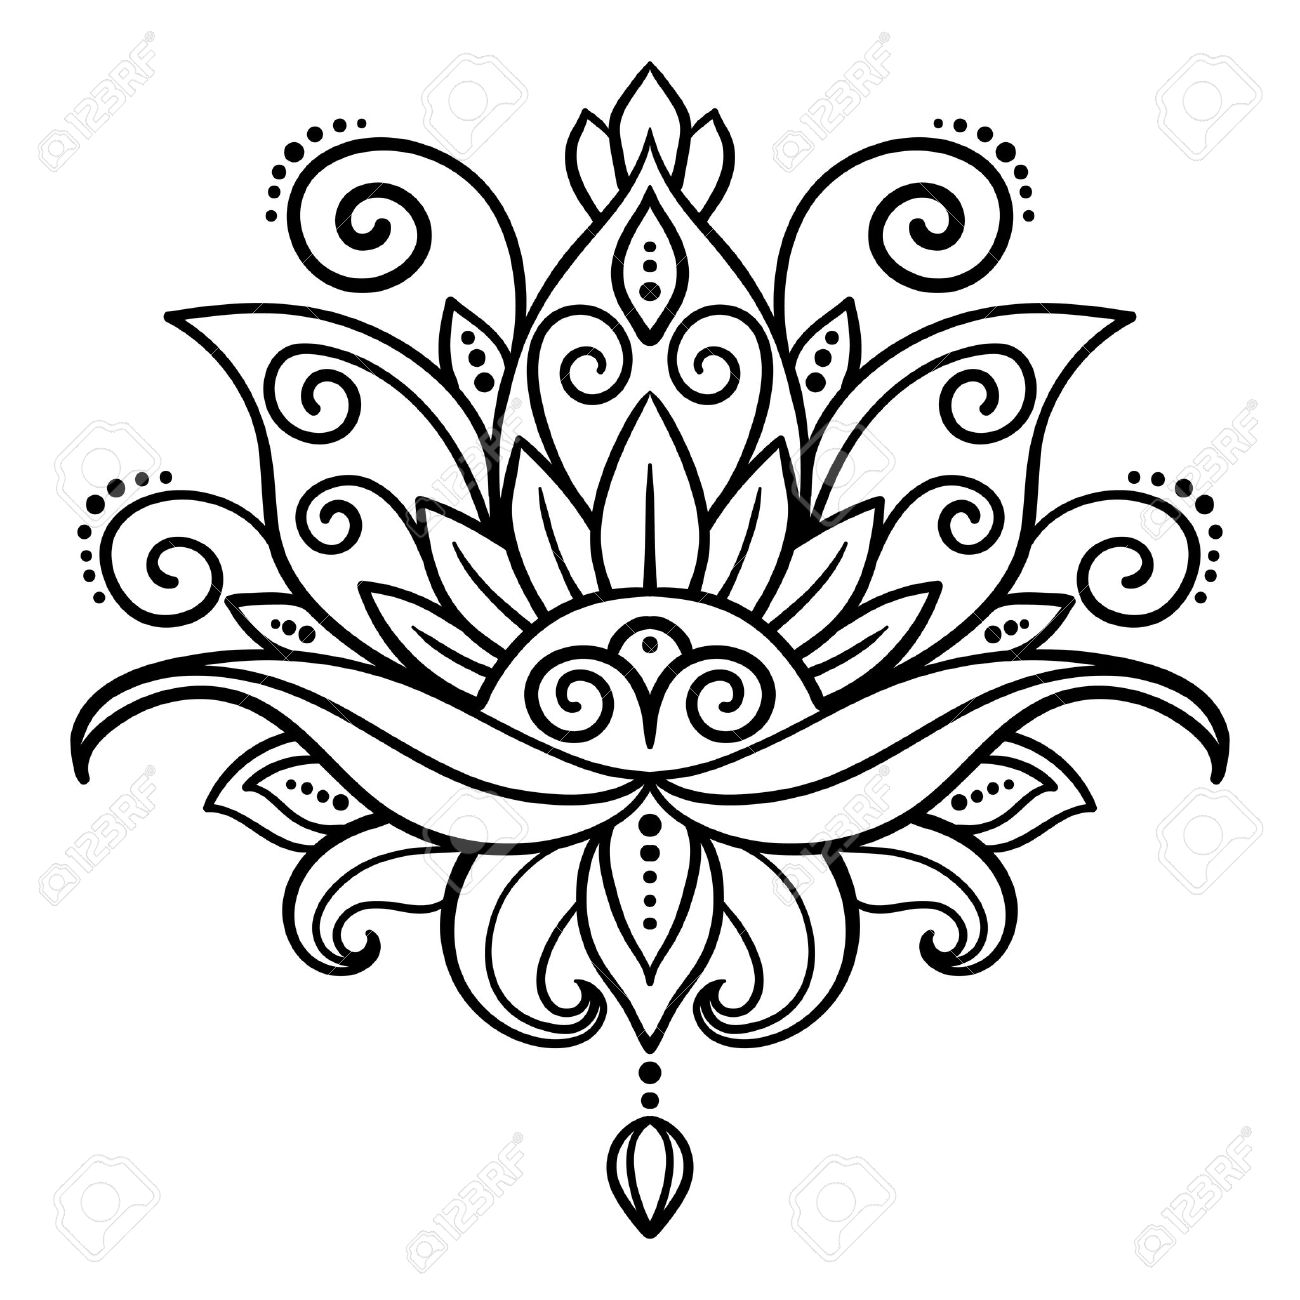 Dessin fleur tatouage